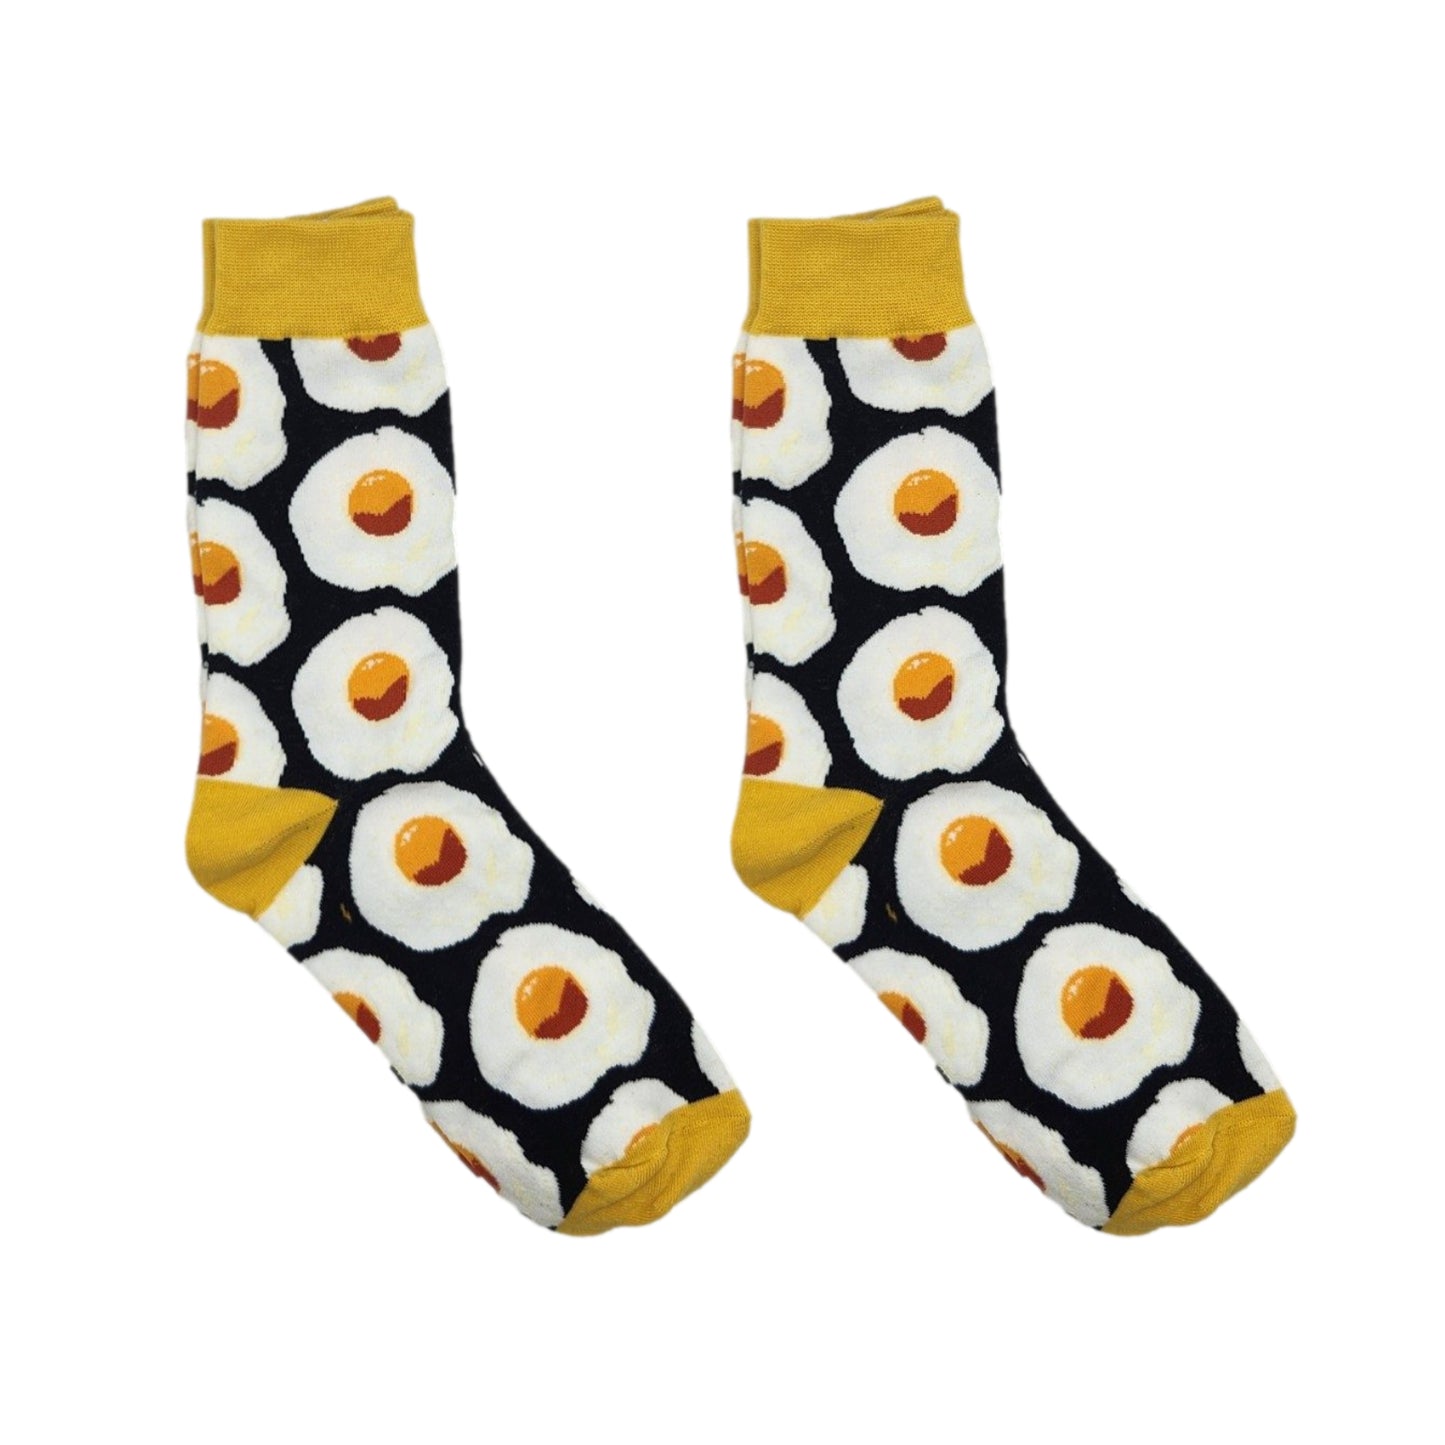 Buy 2 get 1 FREE | Grow Mimius Oddsocks Animal Food Casual Crew Ladies Unisex Novelty Socks Cute Sock - Homeware Discounts